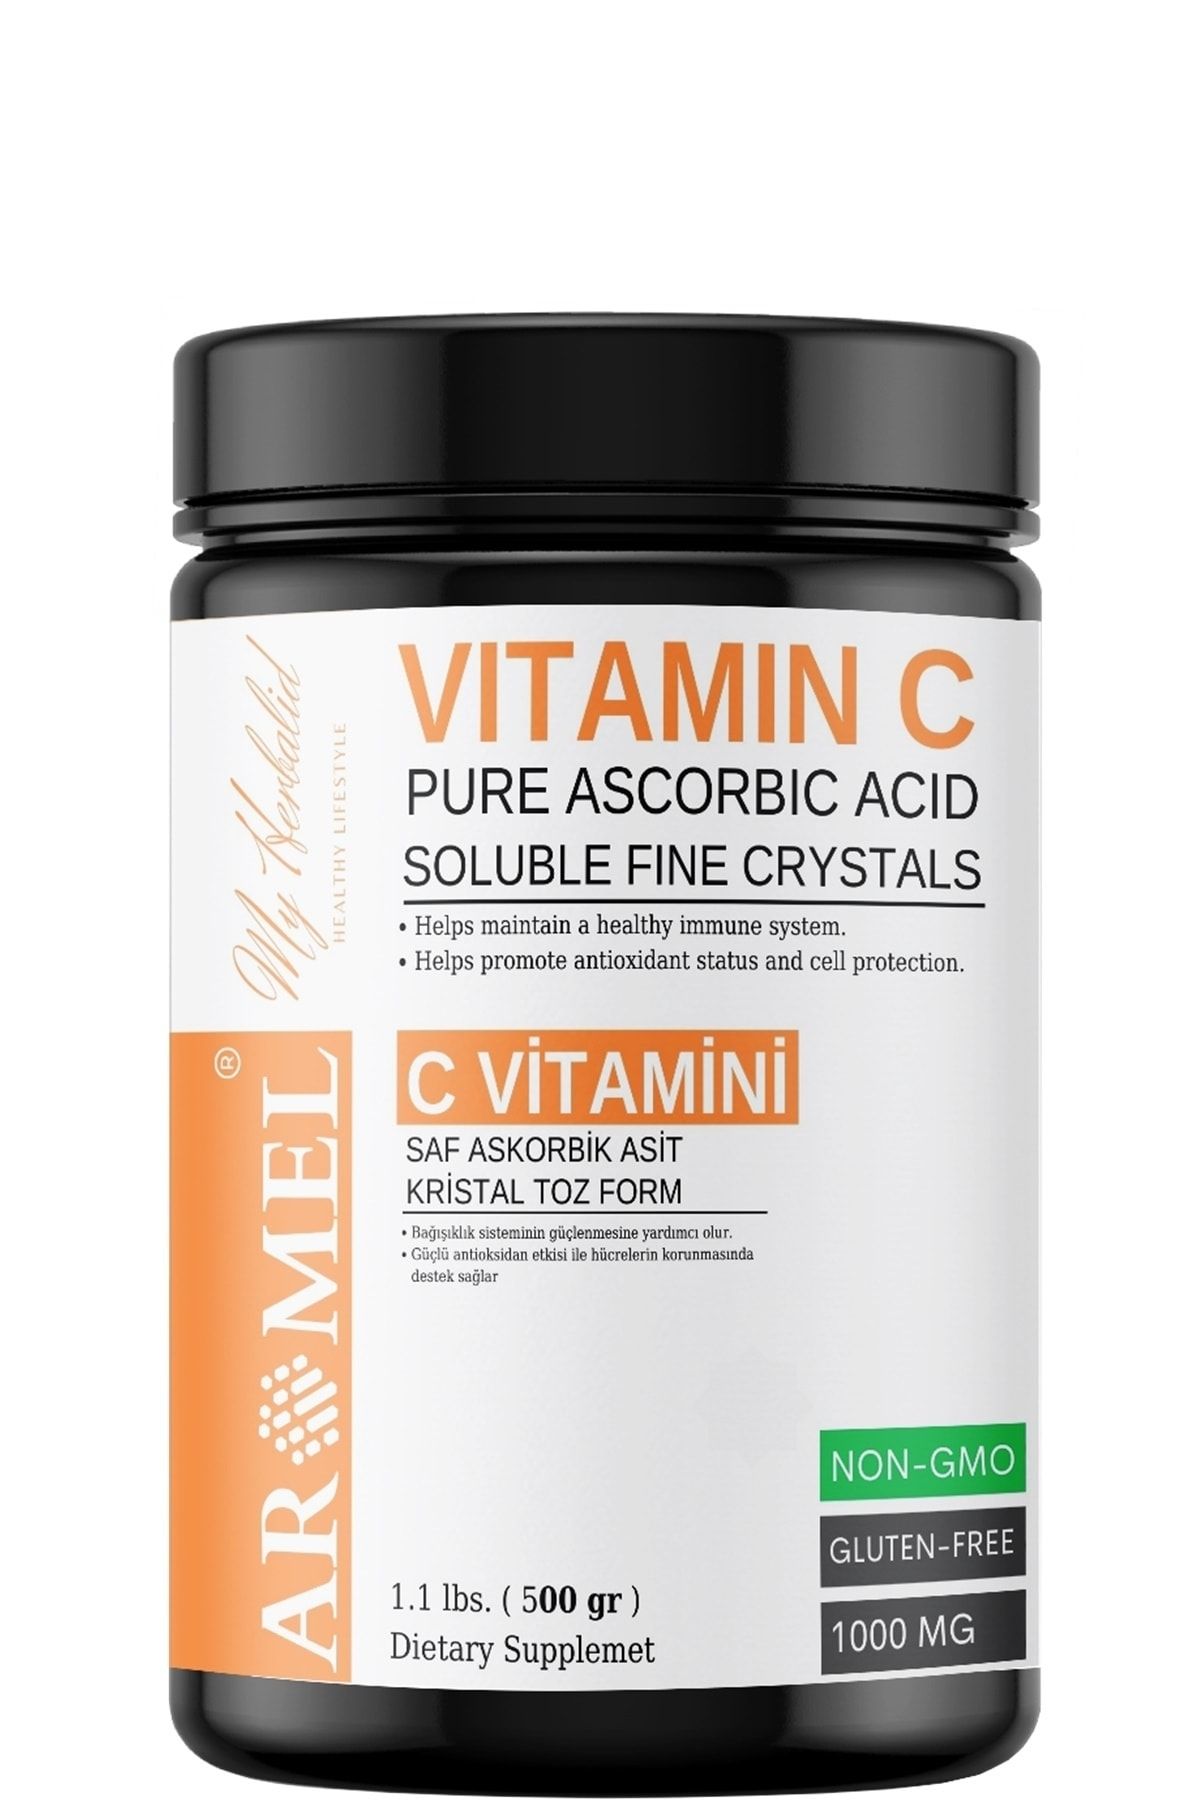 Aromel C Vitamini 500 gr | Askorbik Asit | Avrupa,ekstra Saf | Yenilebilir Toz Form